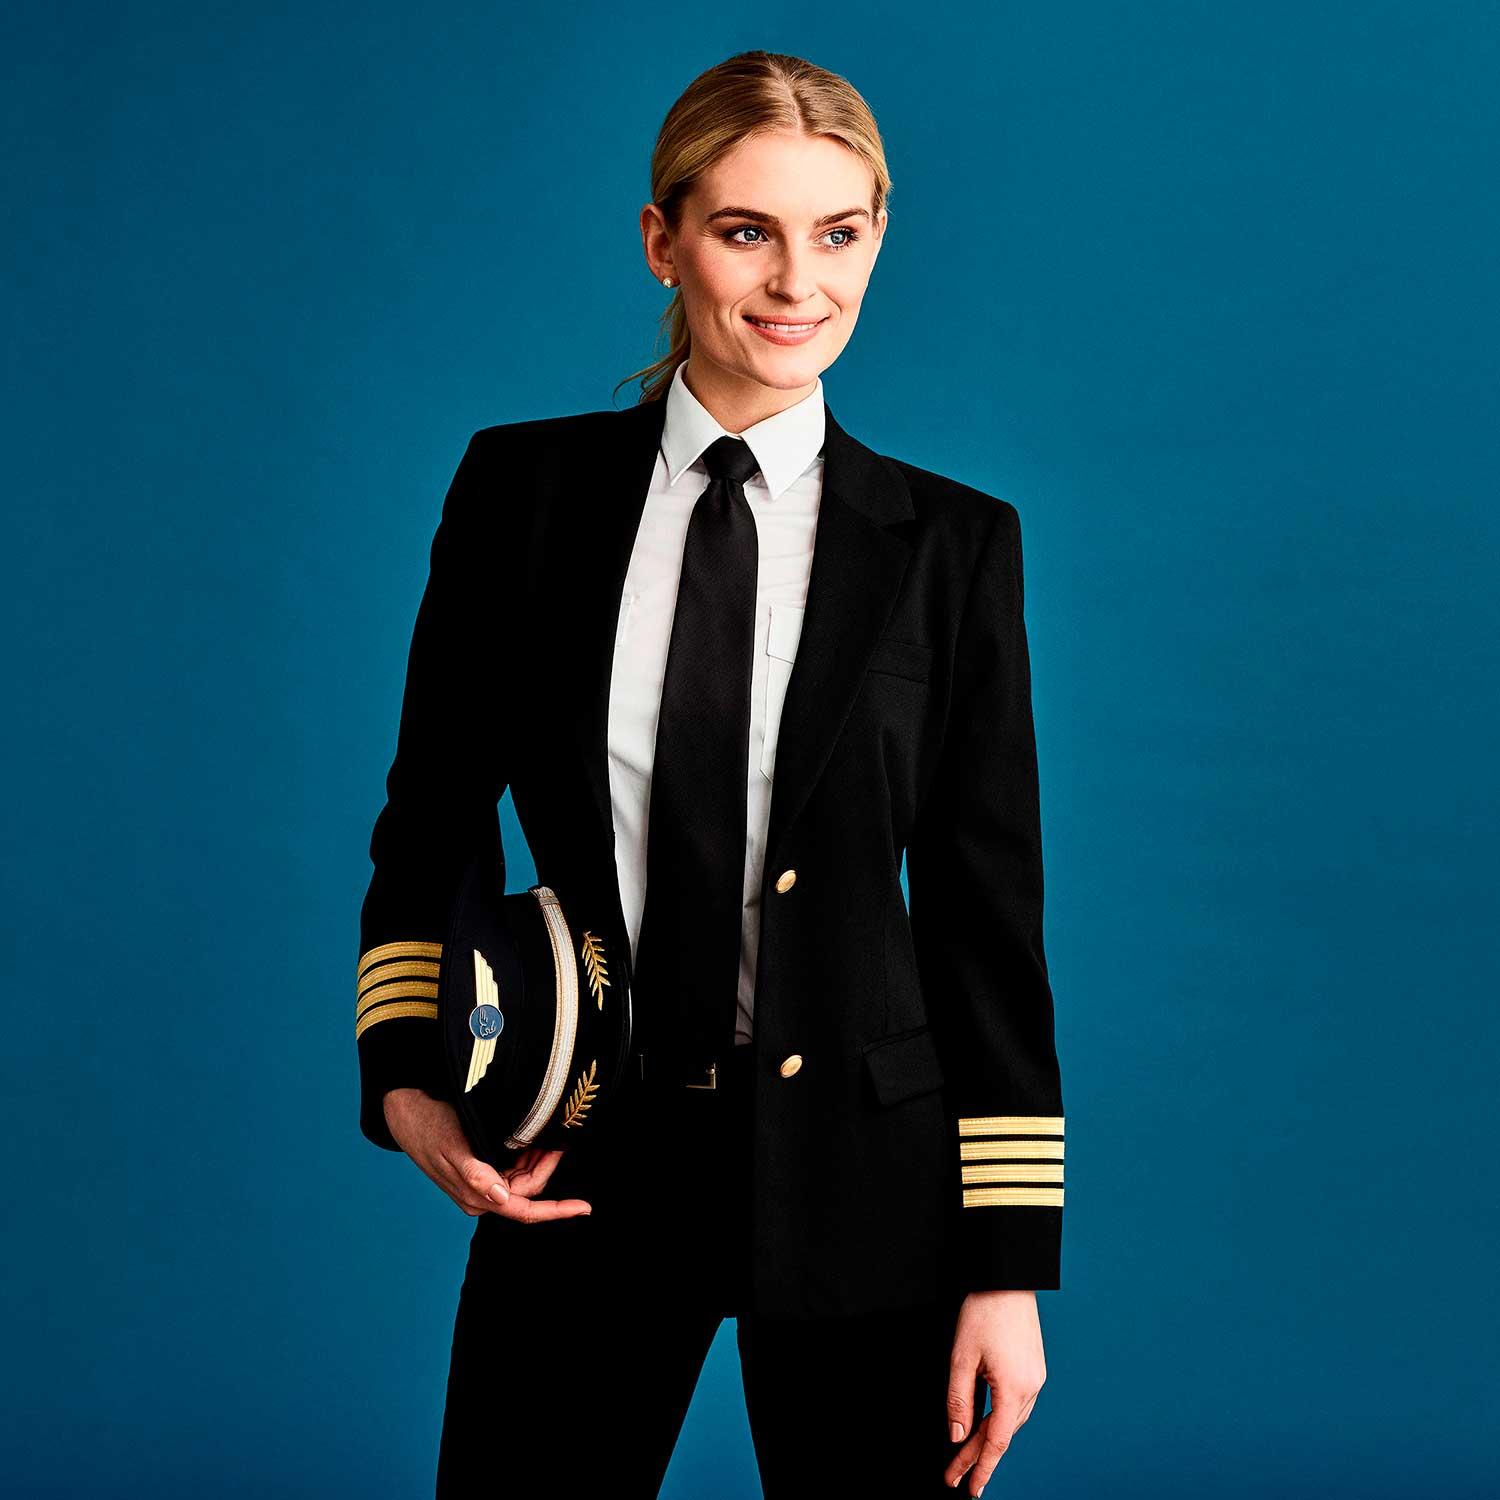 Pilot uniform for female pilots